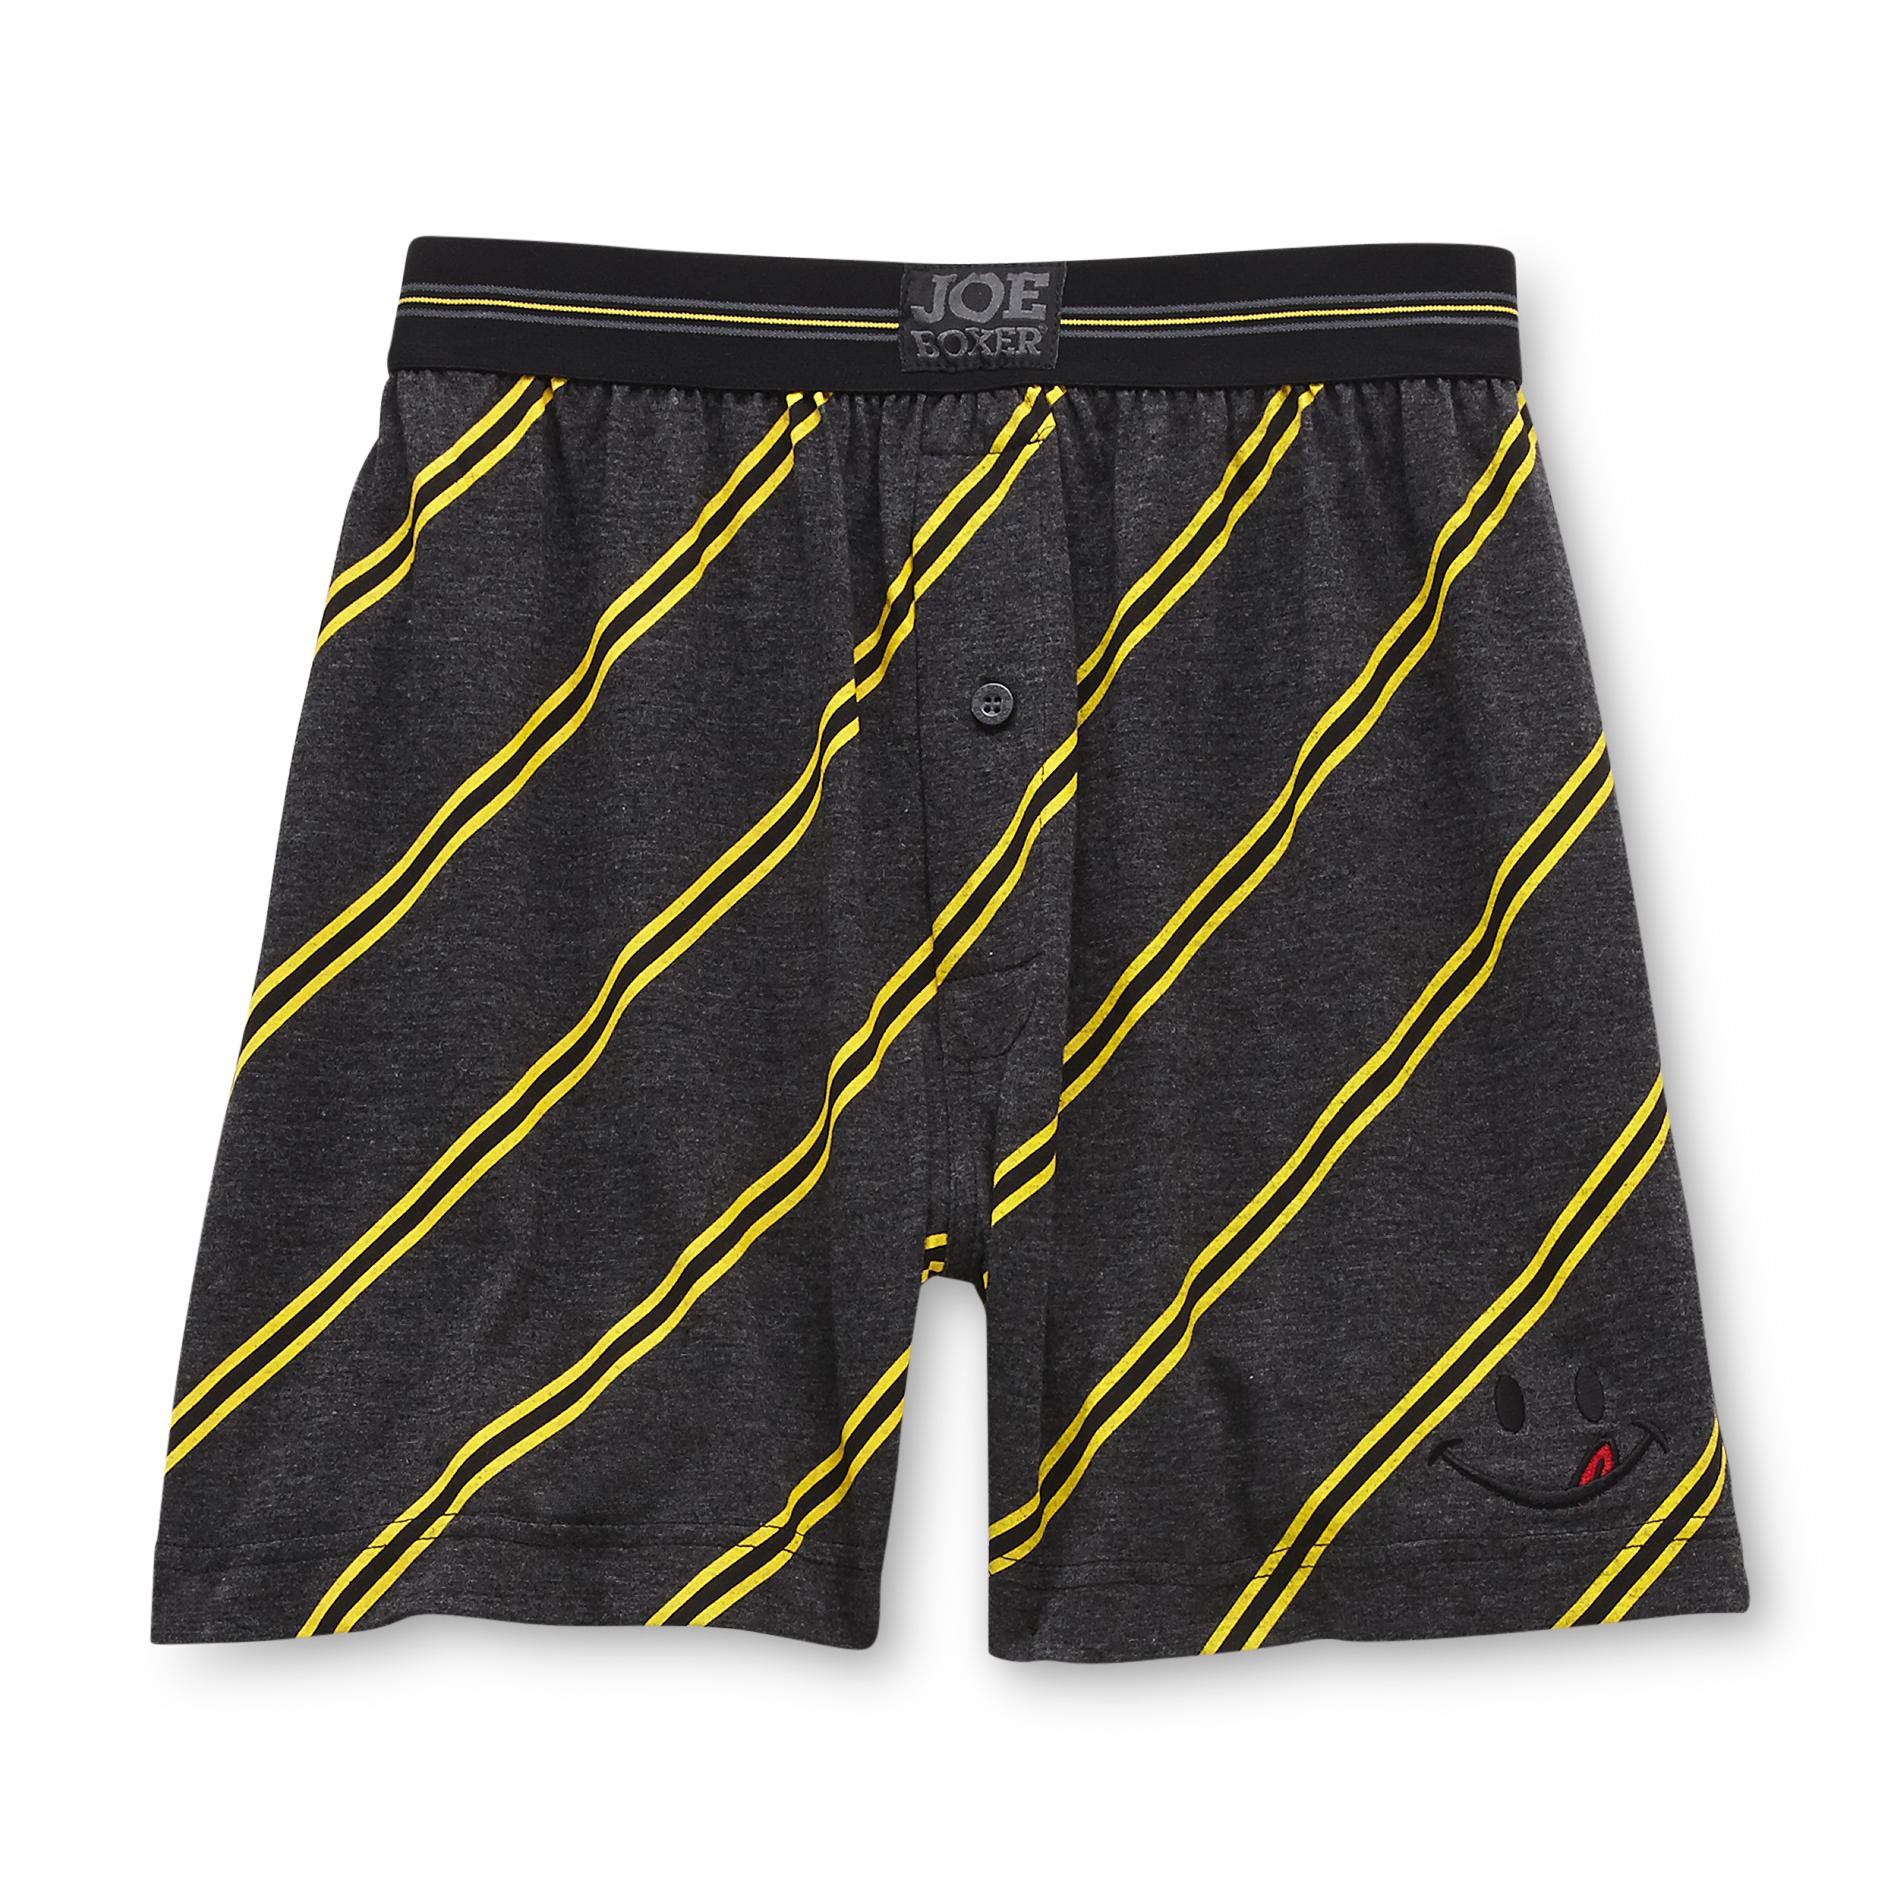 Joe Boxer Men's Boxer Shorts - Striped